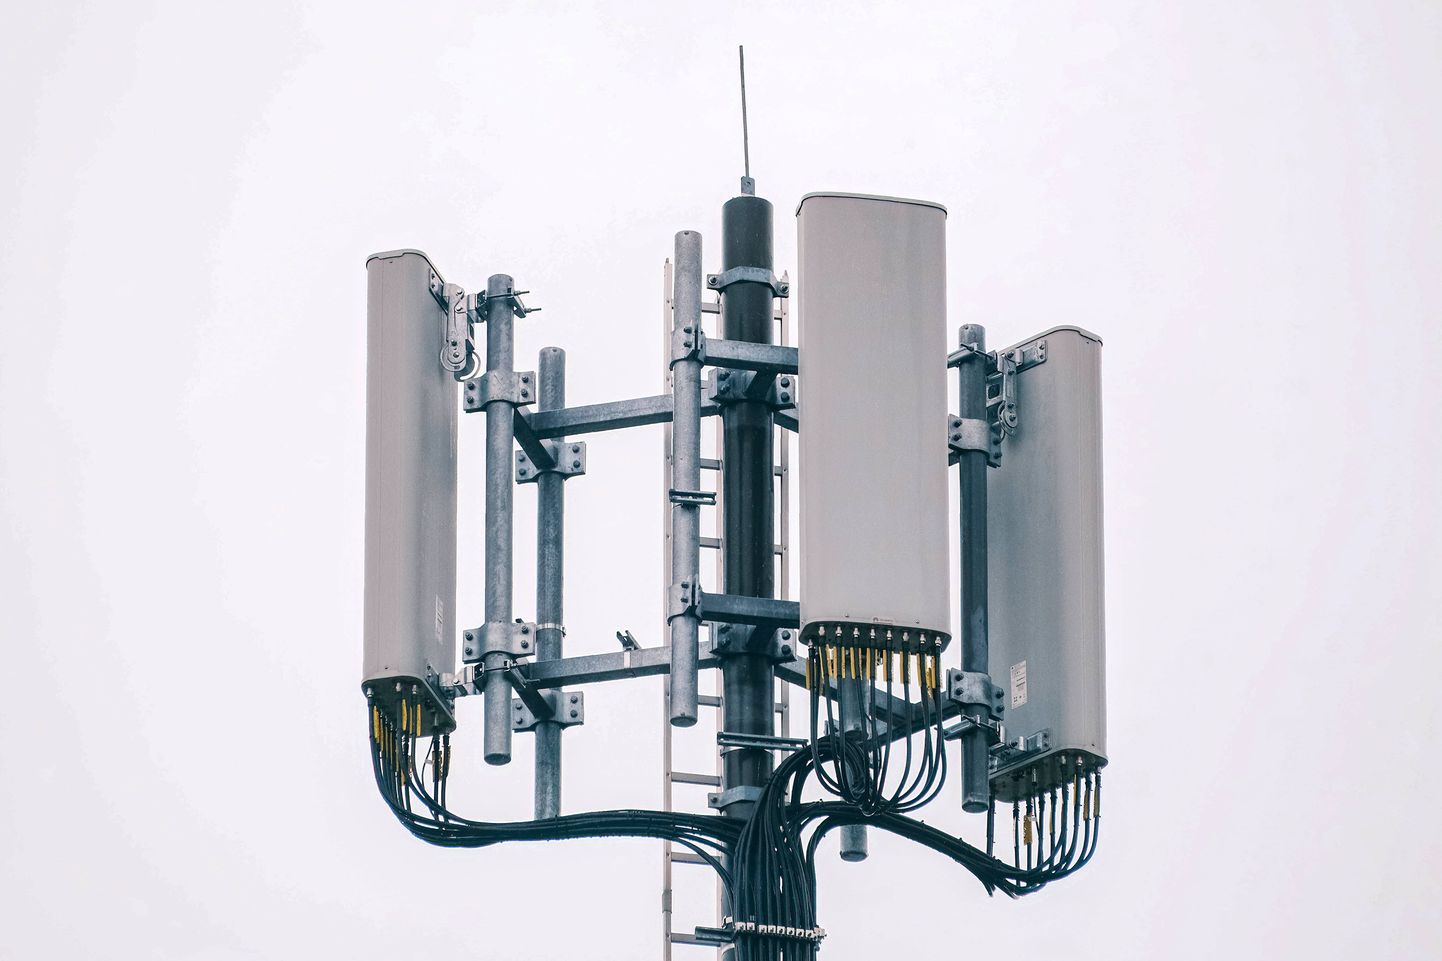 4G, 5G ja 6G antennidega mobiilimast Saksamaal. Kui praegu peab see kiirgama palju igas suunas, siis väiksemate mastide ja tihedama vürguga saaks energiat kokku hoida nii võrgus kui mobiiltelefonis, näitasid teadlased.